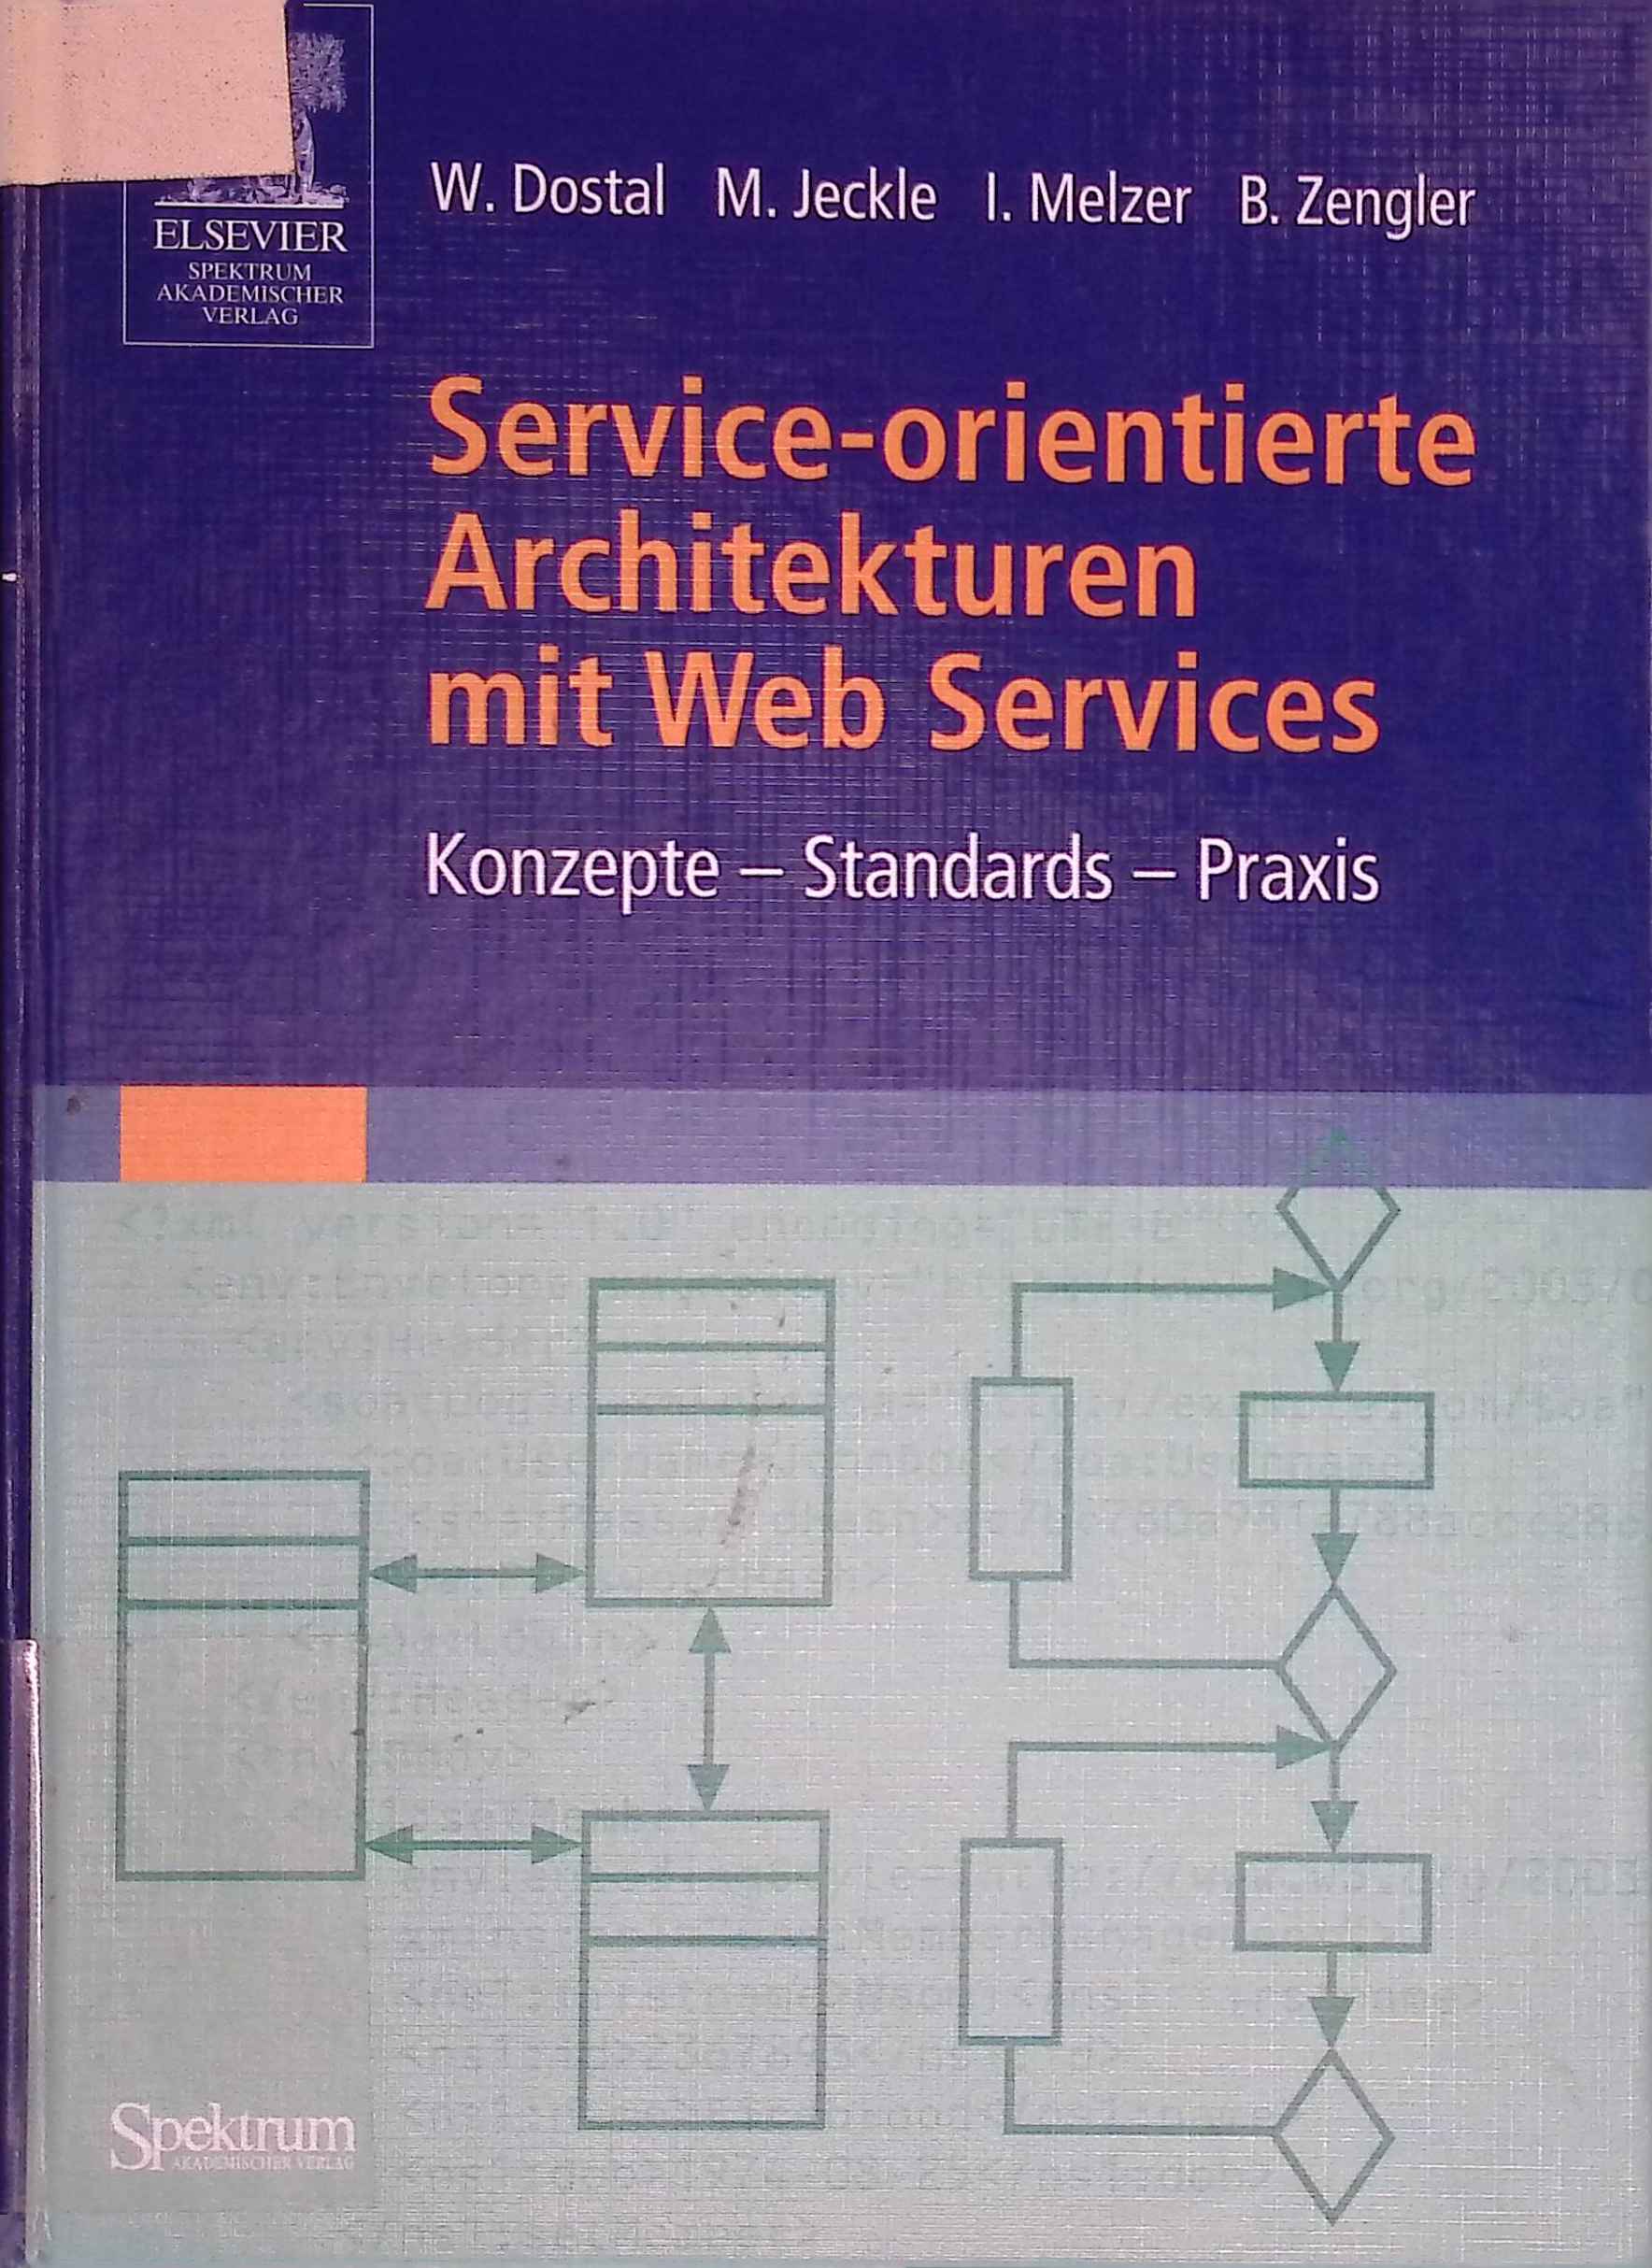 Service-orientierte Architekturen mit Web Services: Konzepte - Standards - Praxis. - Dostal, Wolfgang, Mario Jeckle und Ingo Melzer